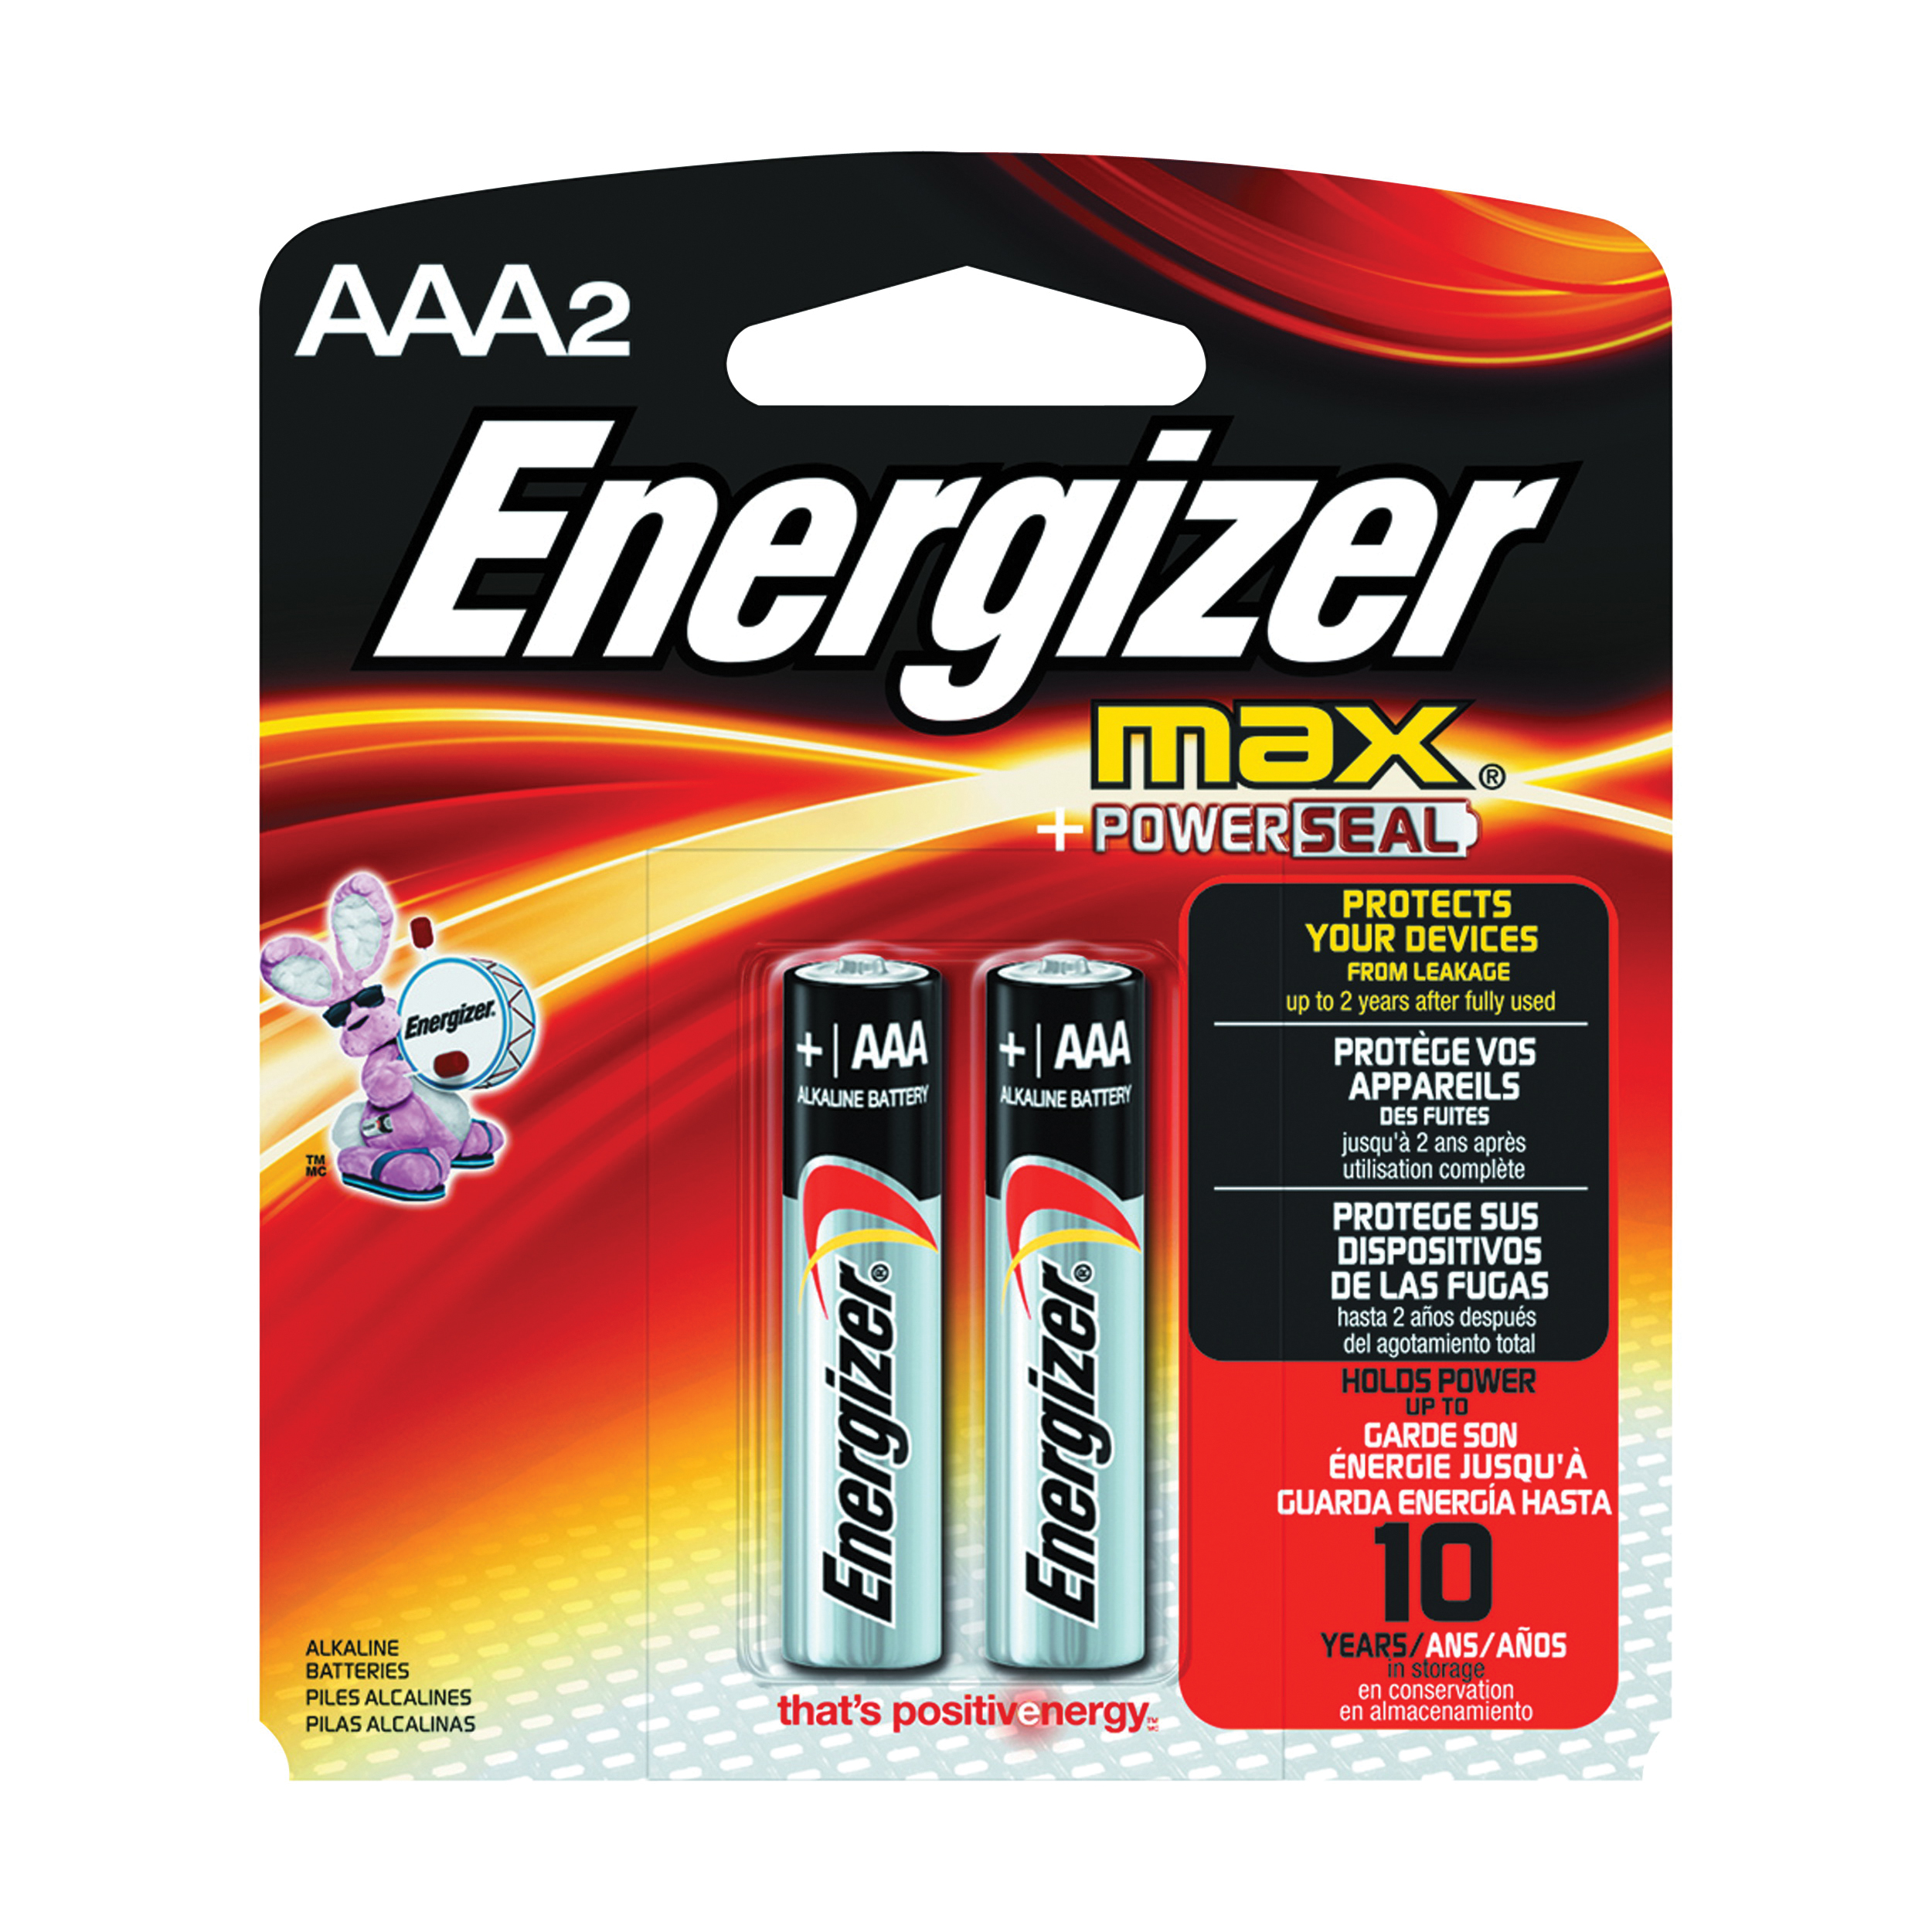 Energizer E92BP-2 Battery, 1.5 V Battery, 1250 mAh, AAA Battery, Alkaline, Manganese Dioxide, Zinc - 1